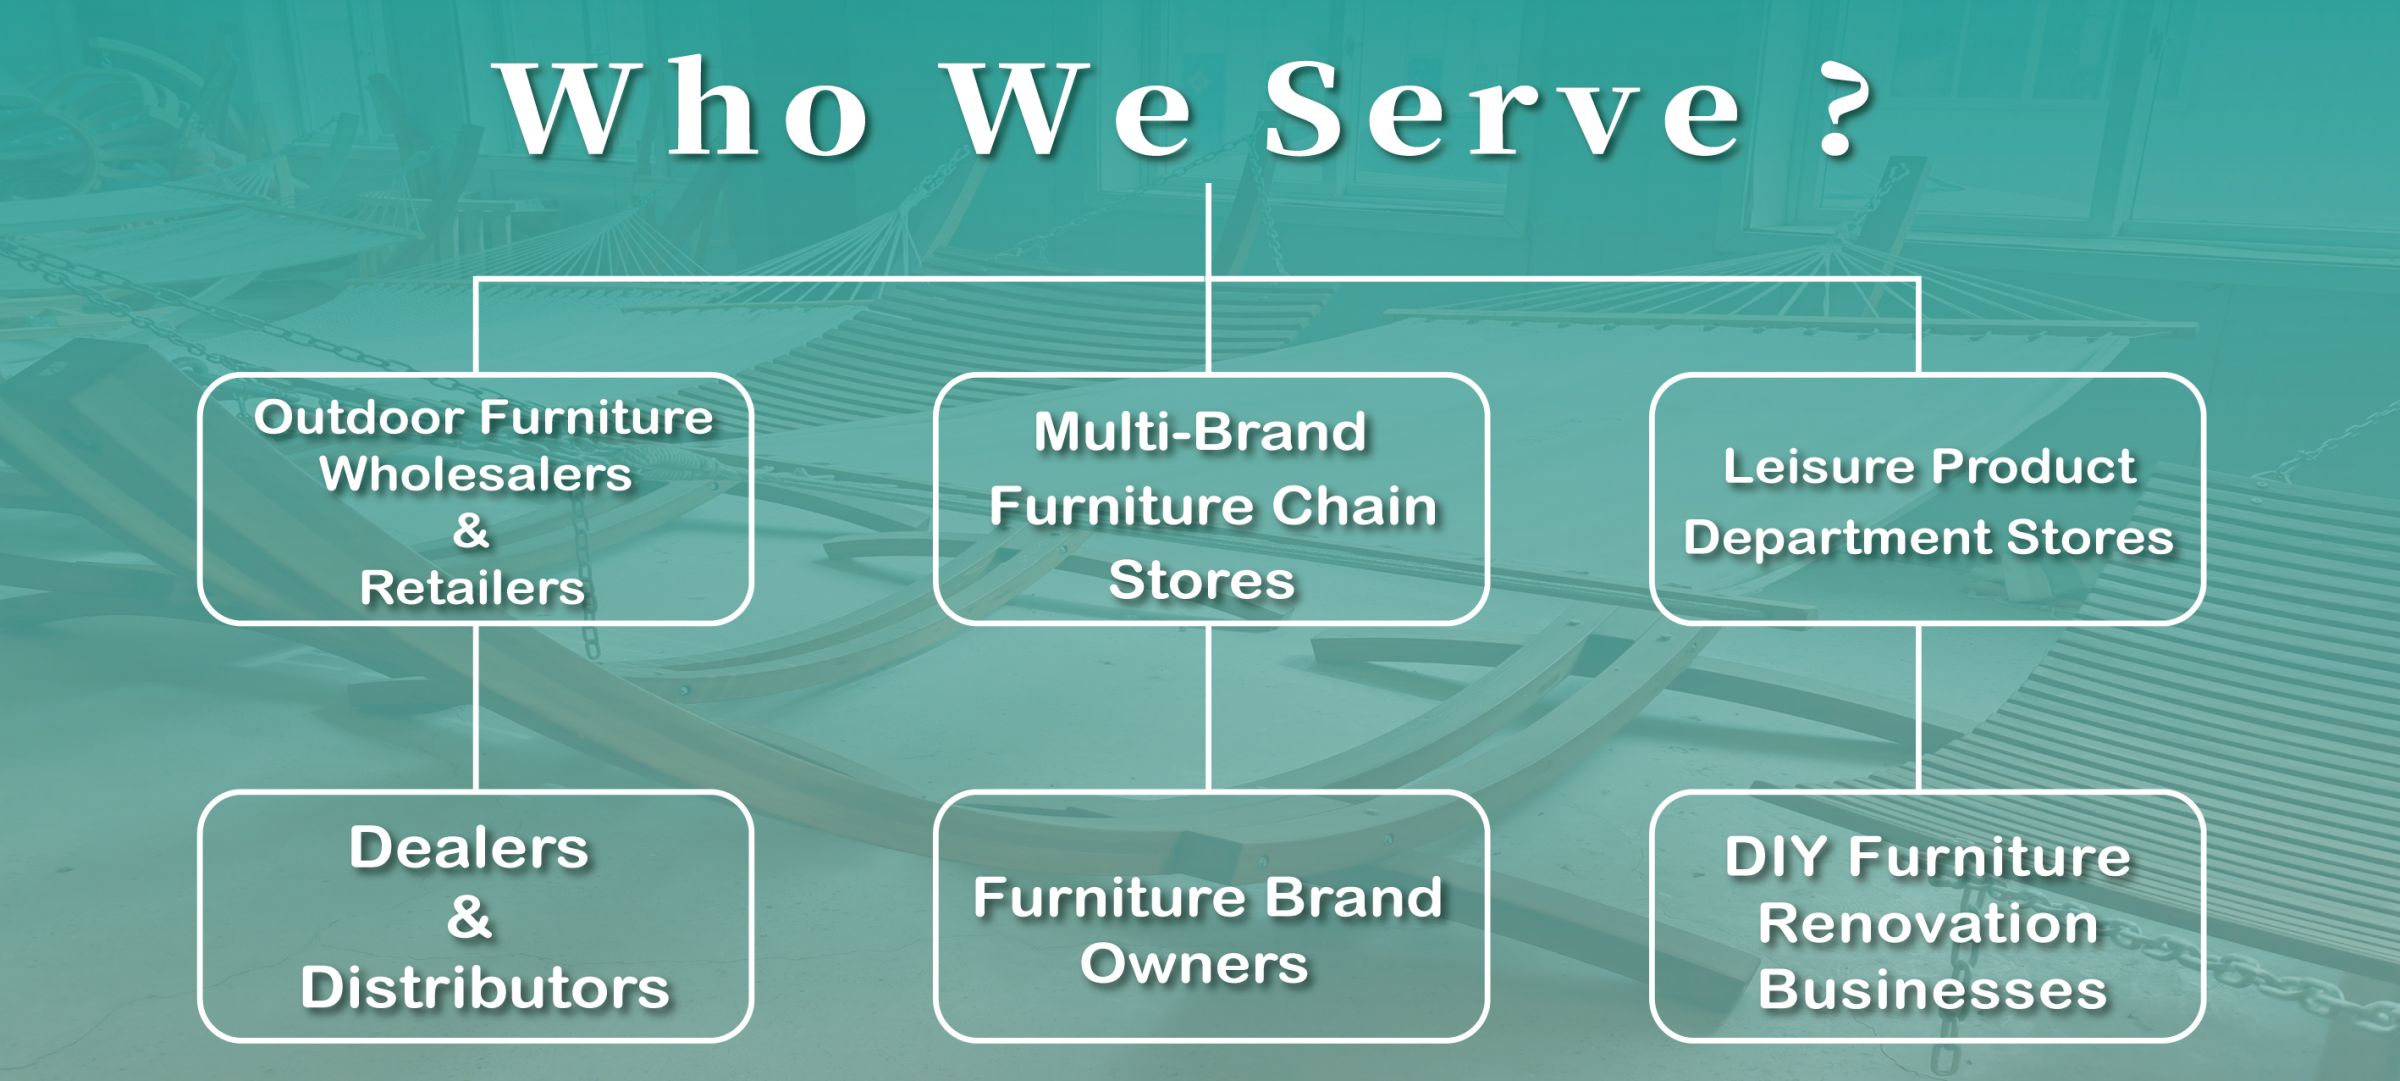 WOODEVER Outdoor Furniture обслуживает глобальных производителей b2b, мебельные бренды и т.д.